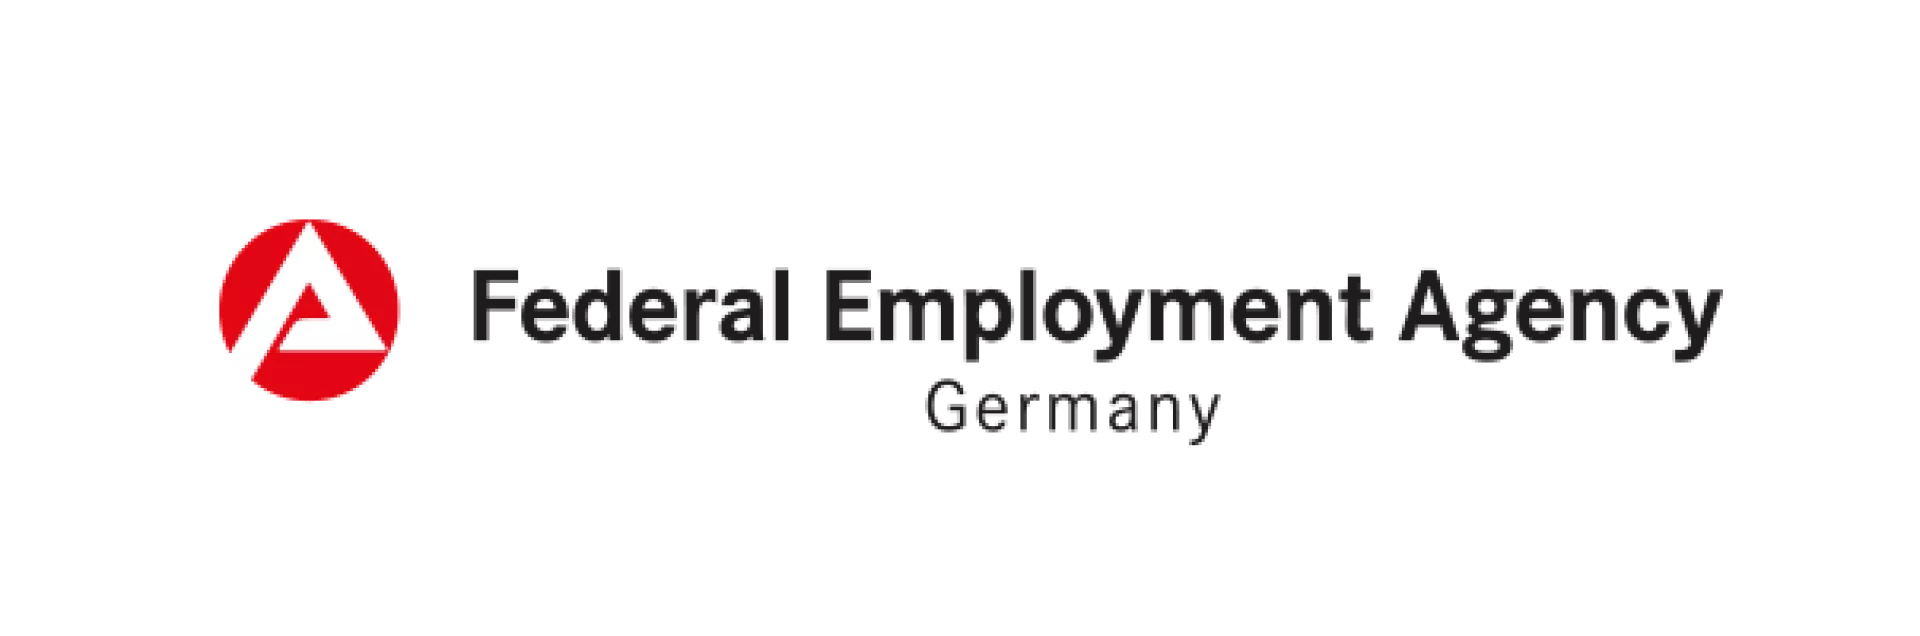 Logo Federal Employment Agency Germany